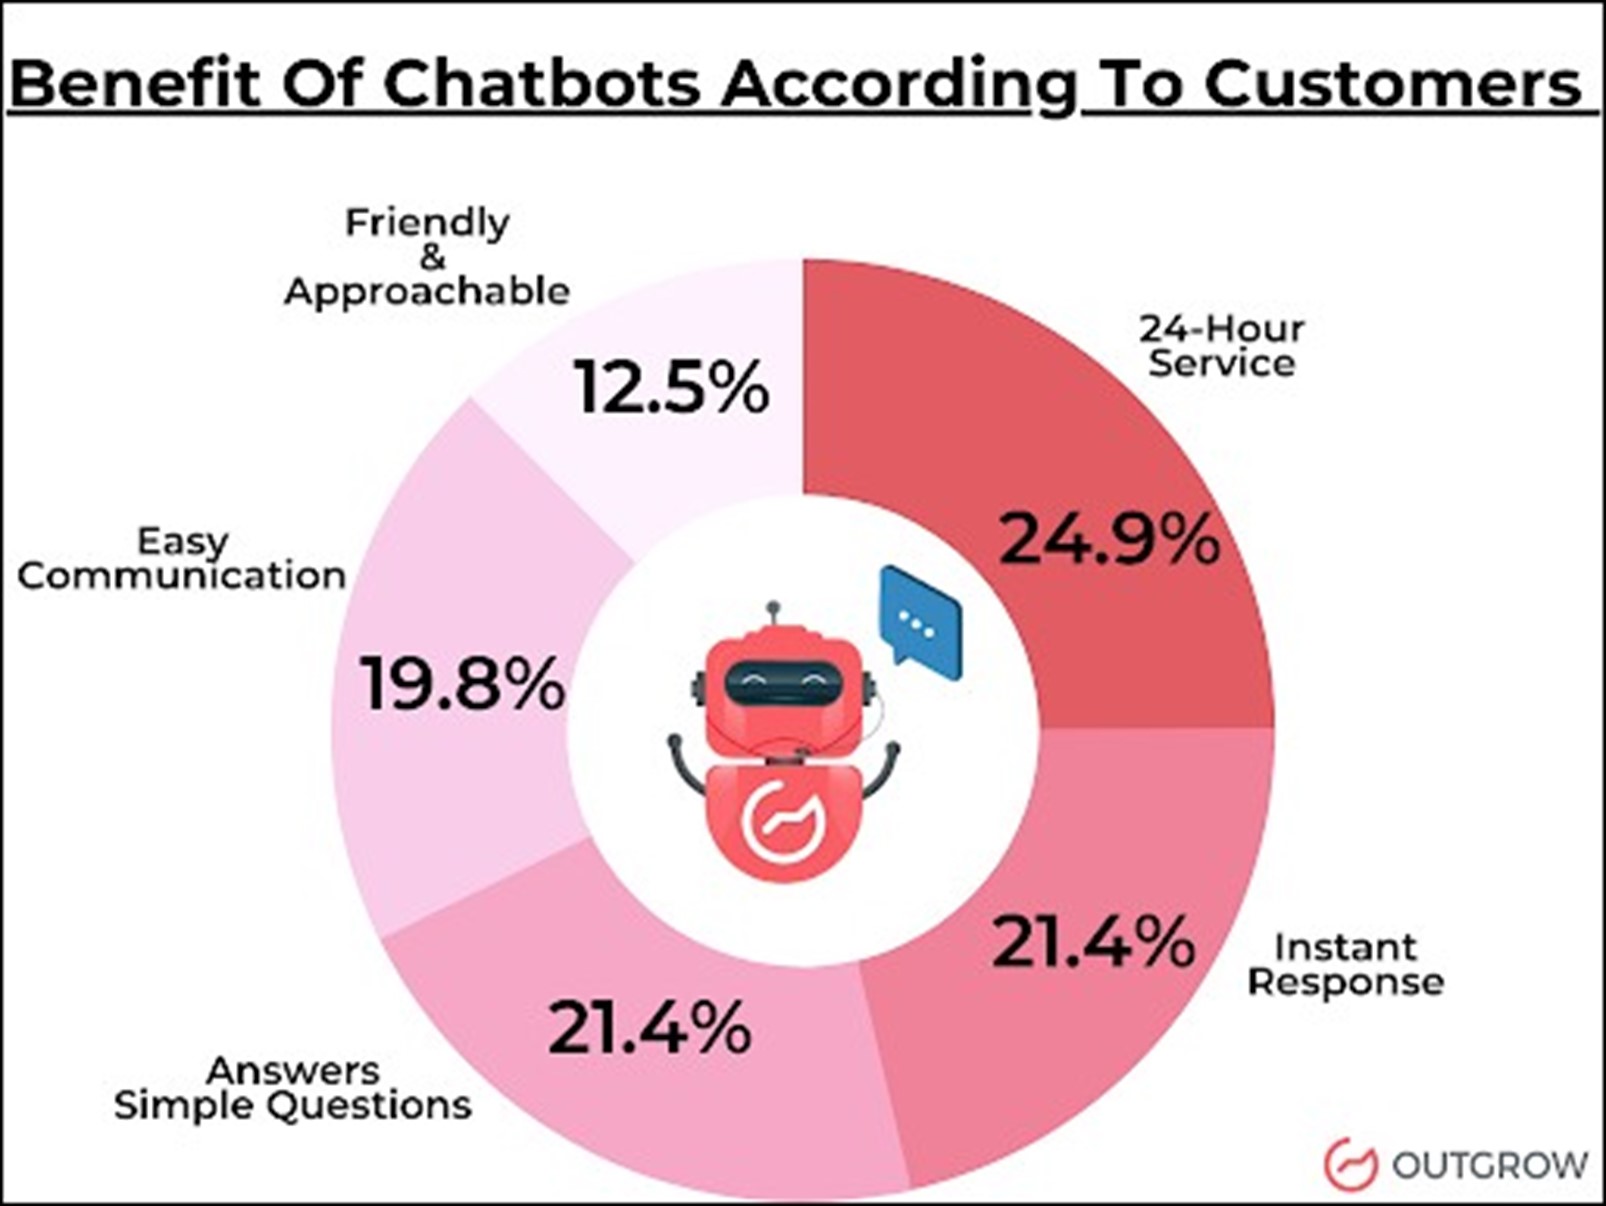 Benefits of chatbots visual chart